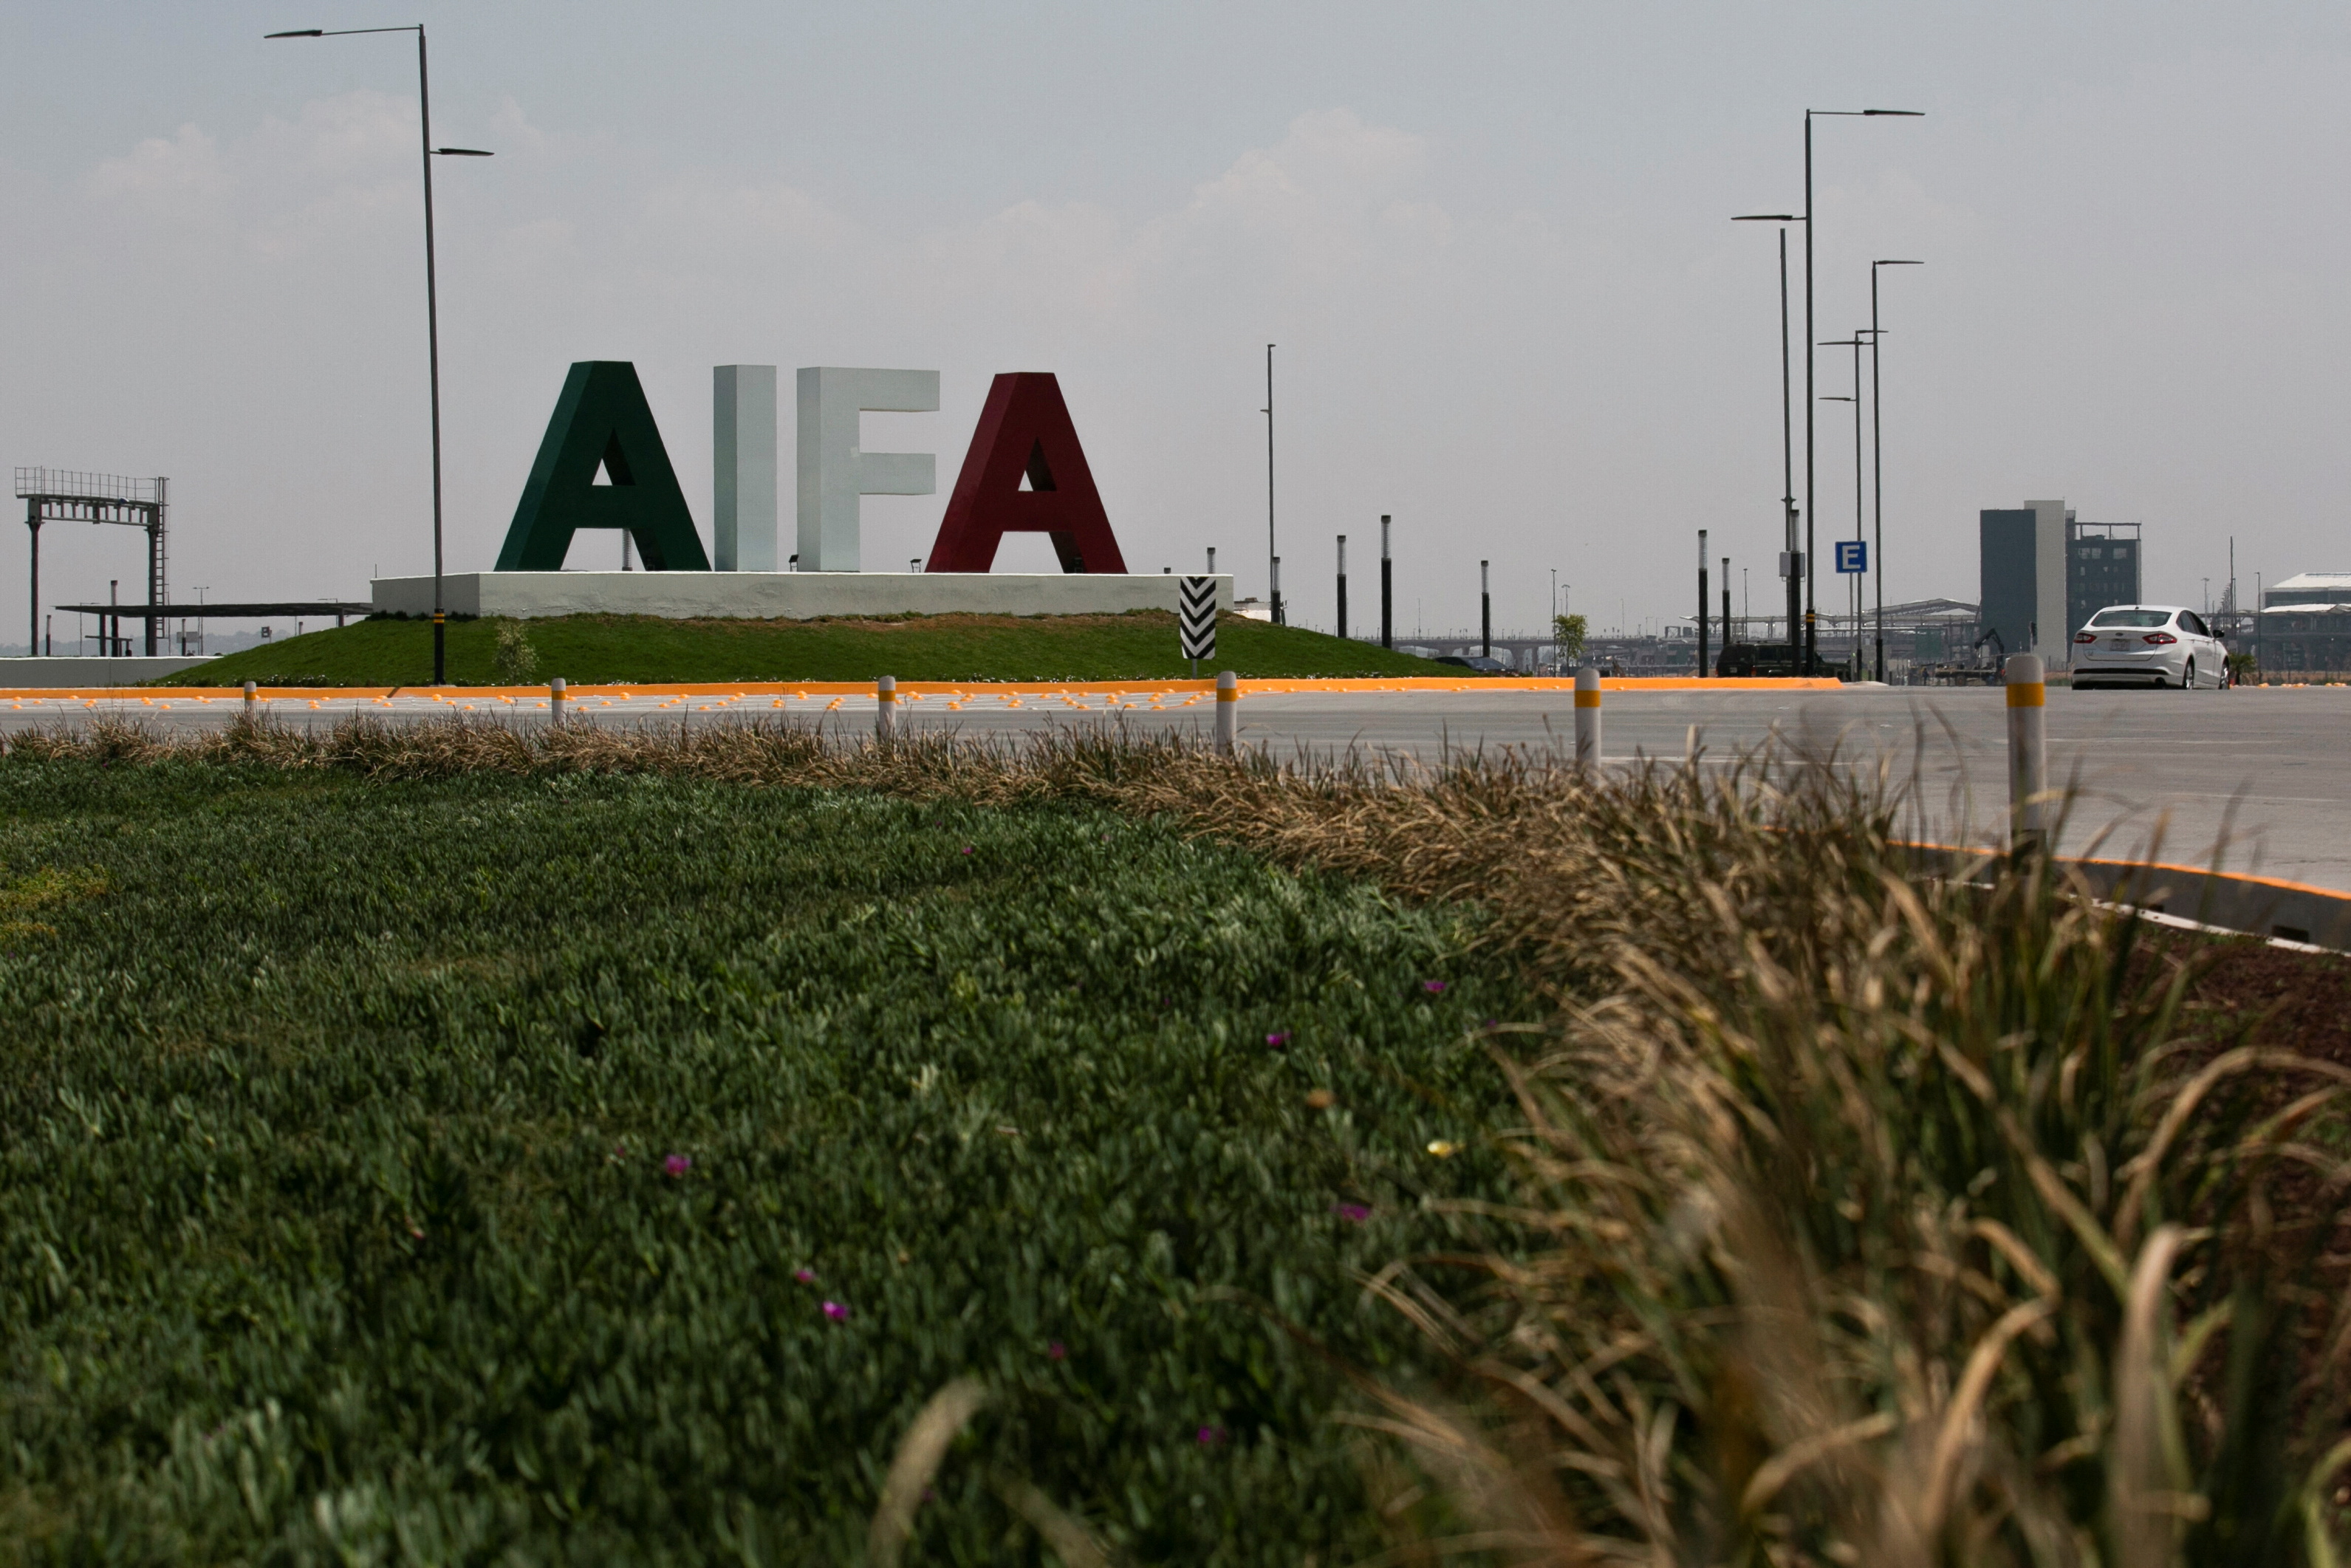 El AIFA es uno de los proyectos insignia de la administración de AMLO. REUTERS/Quetzalli Nicte-Ha